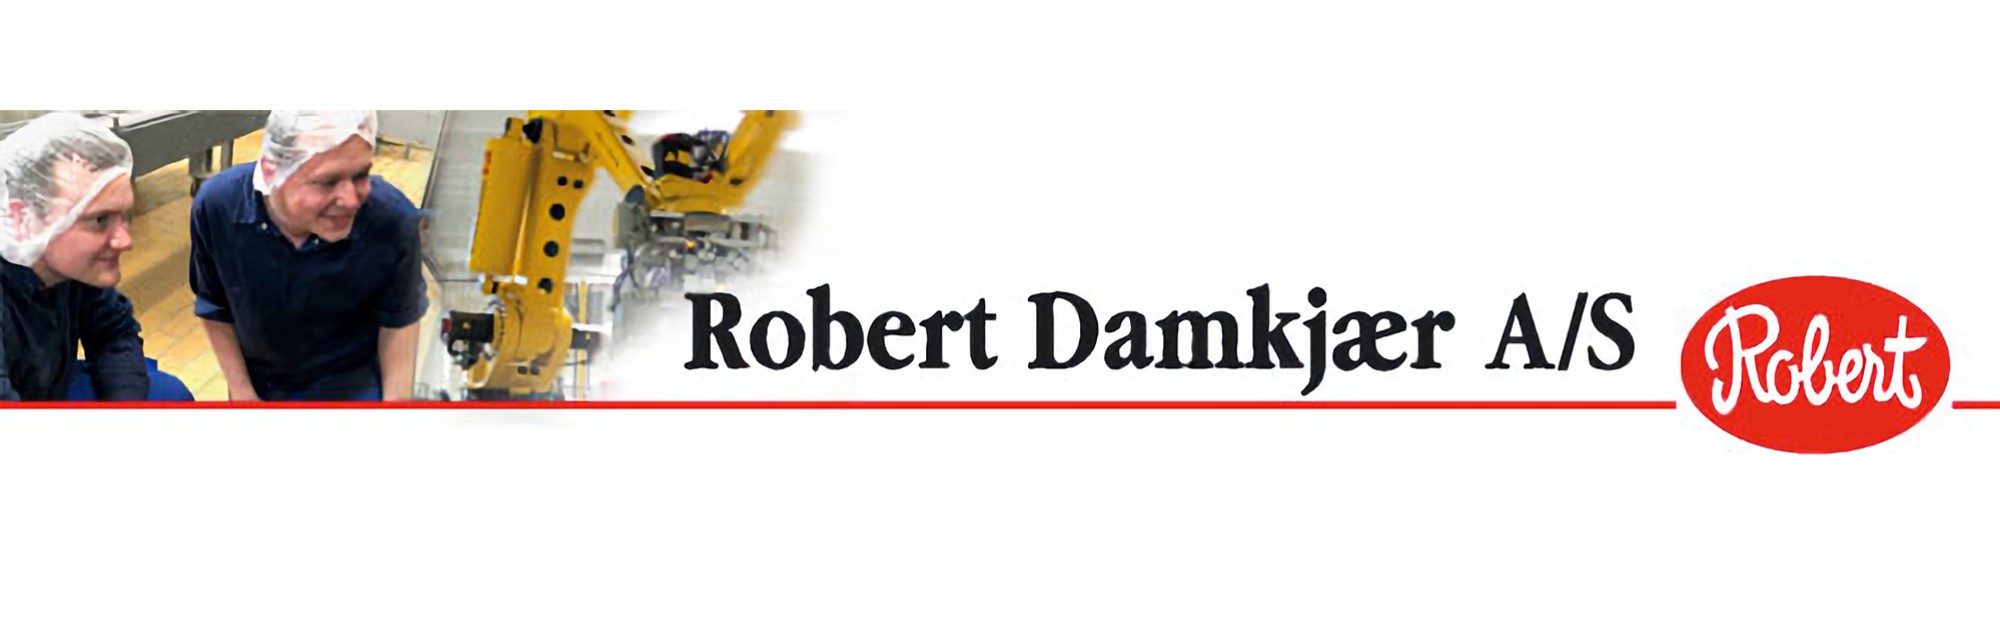 Robert Damkjær A/S